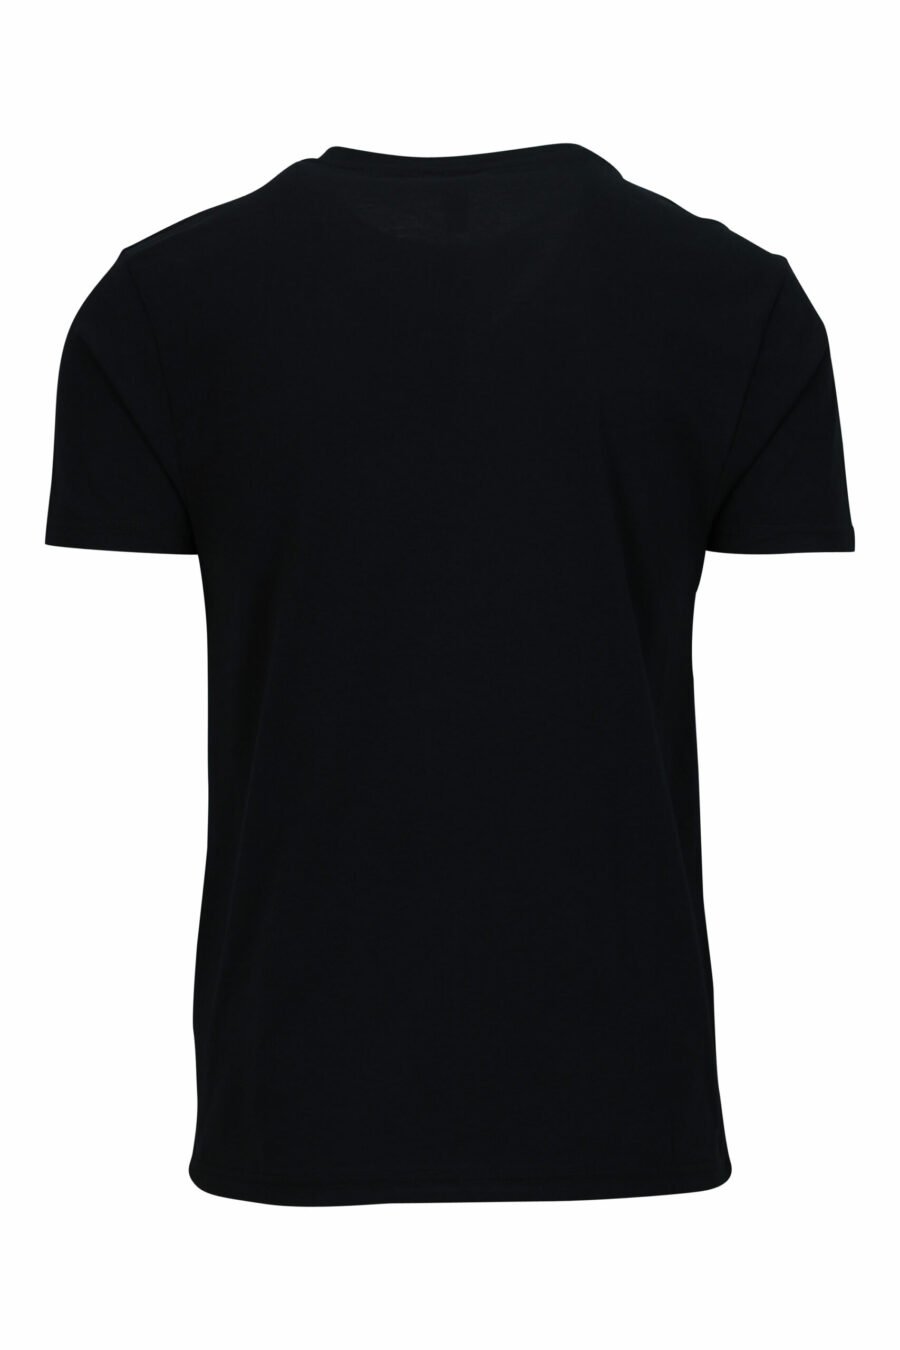 Camiseta negra con logo blanco con detalle rojo en cinta en hombros - 667113604275 1 scaled